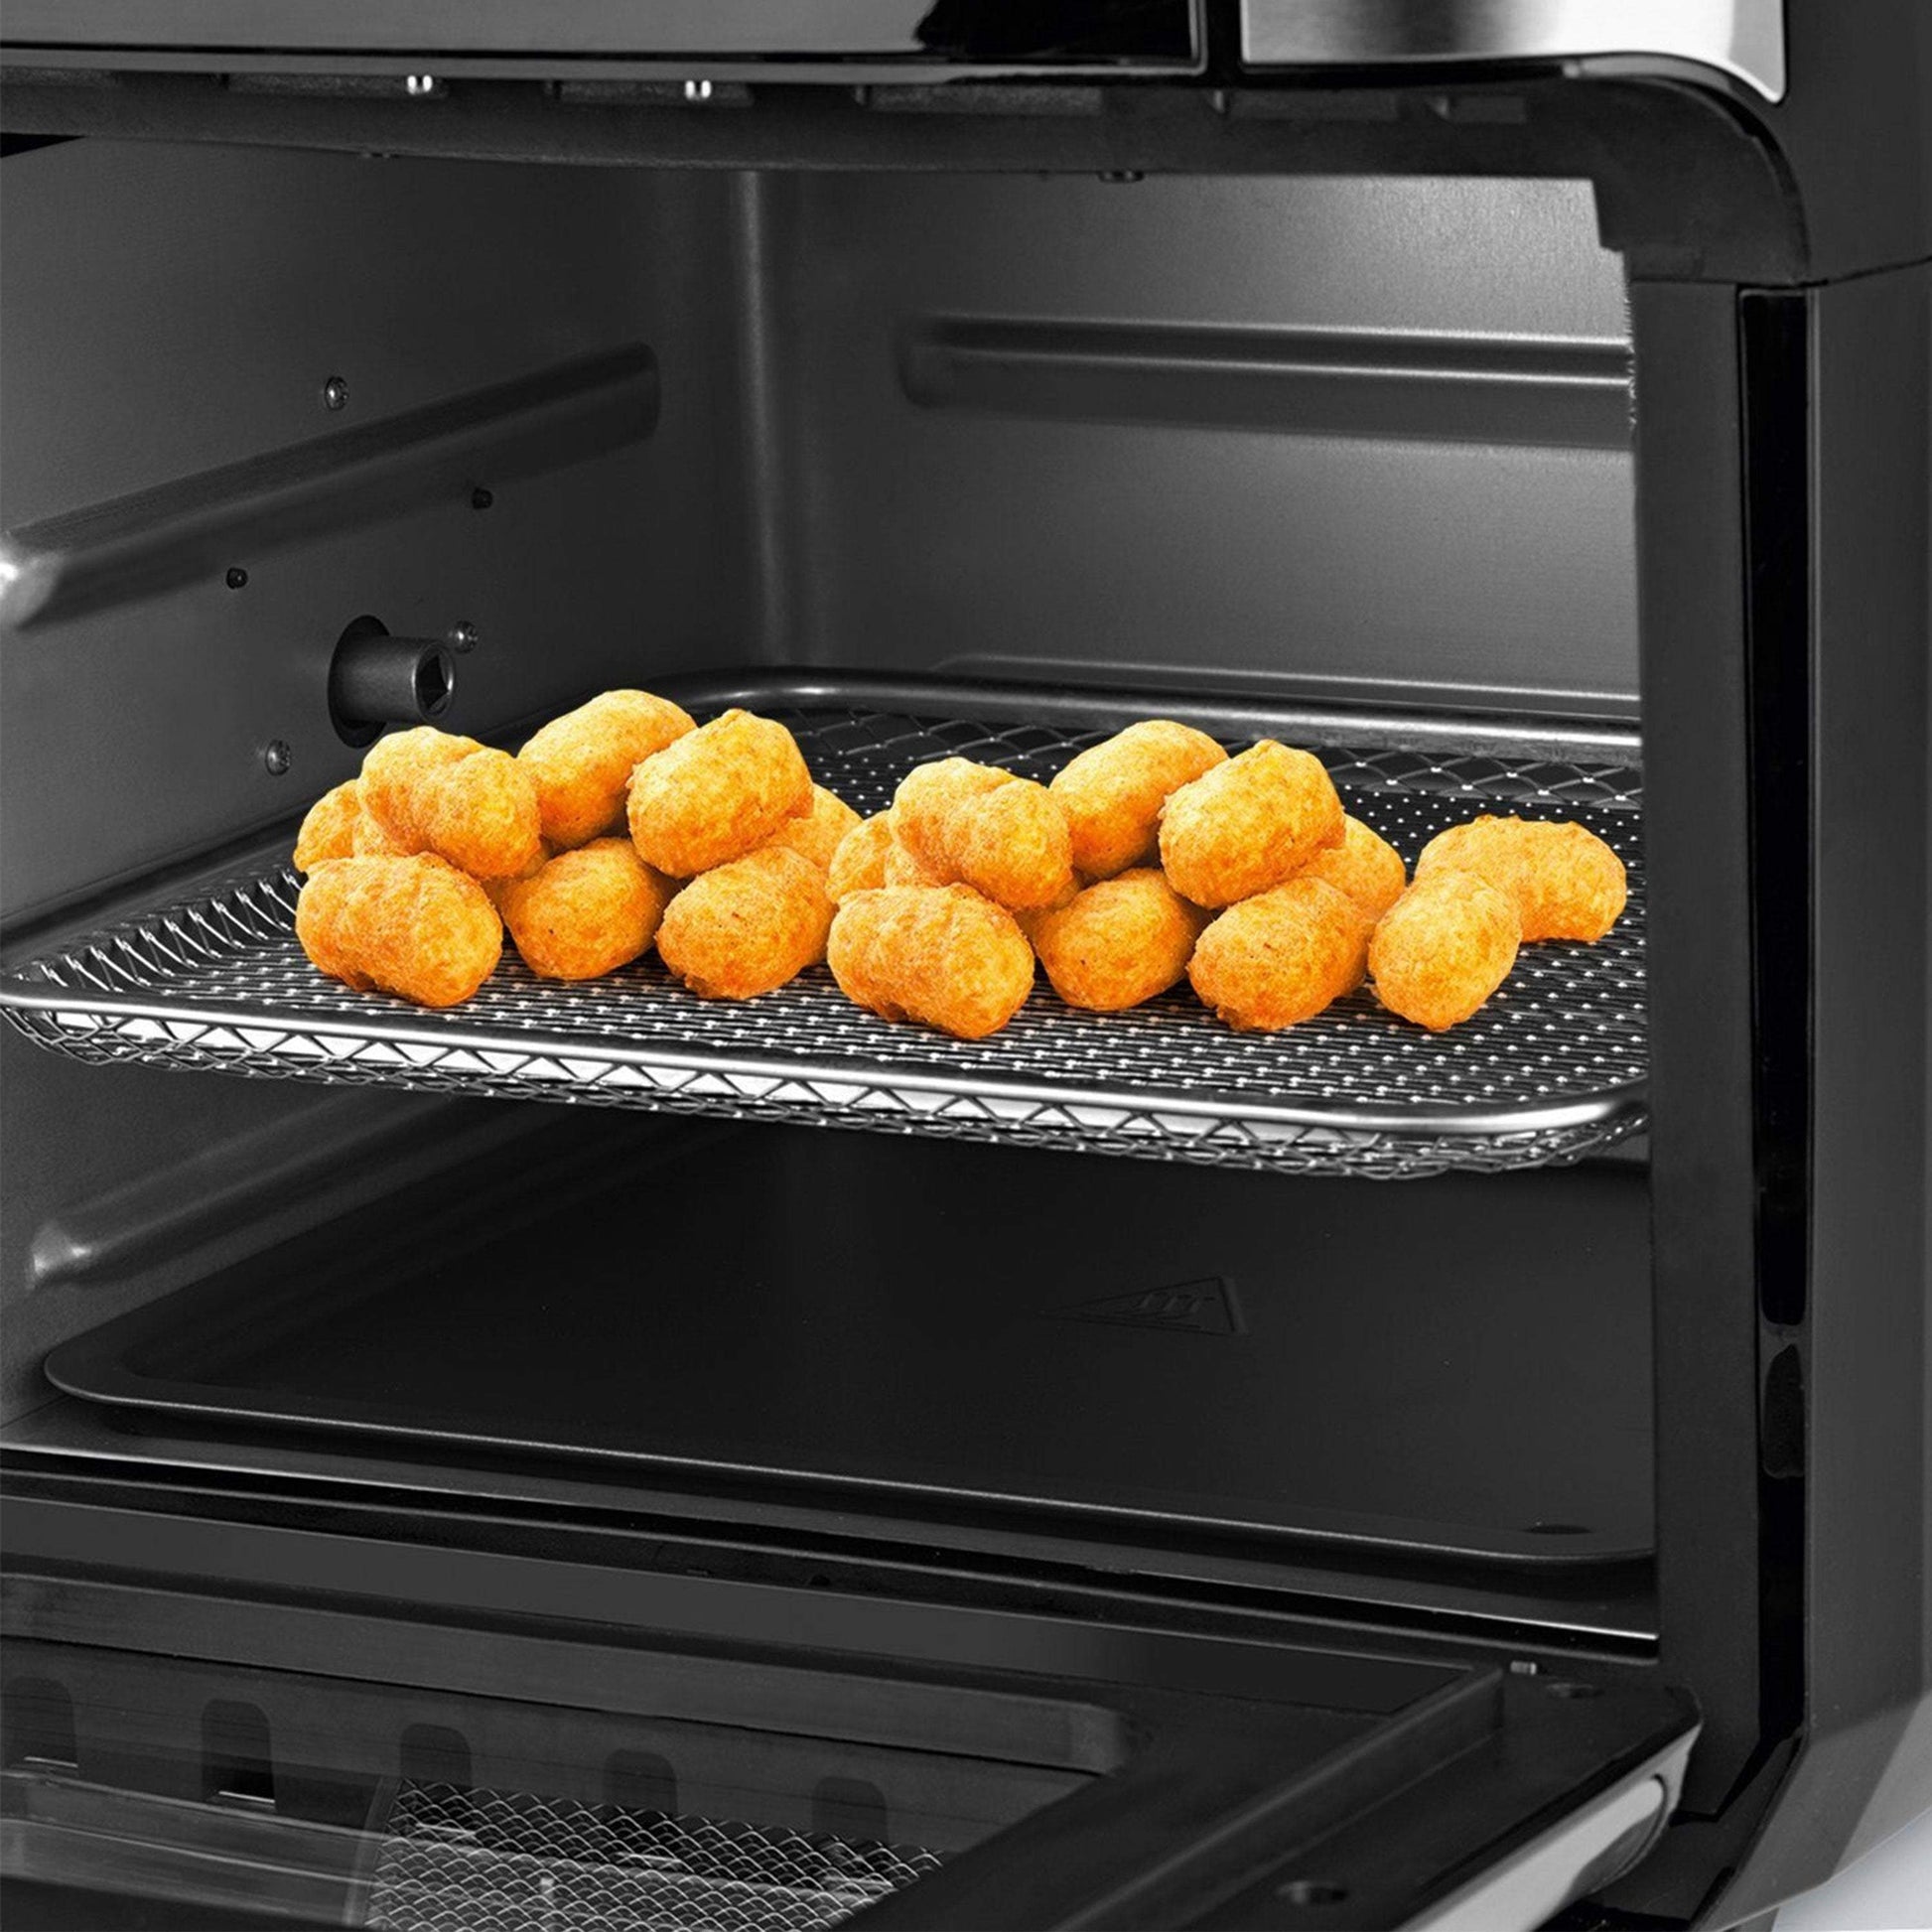 Gourmet Maxx Air Fryer Oven-Royal Brands Co-